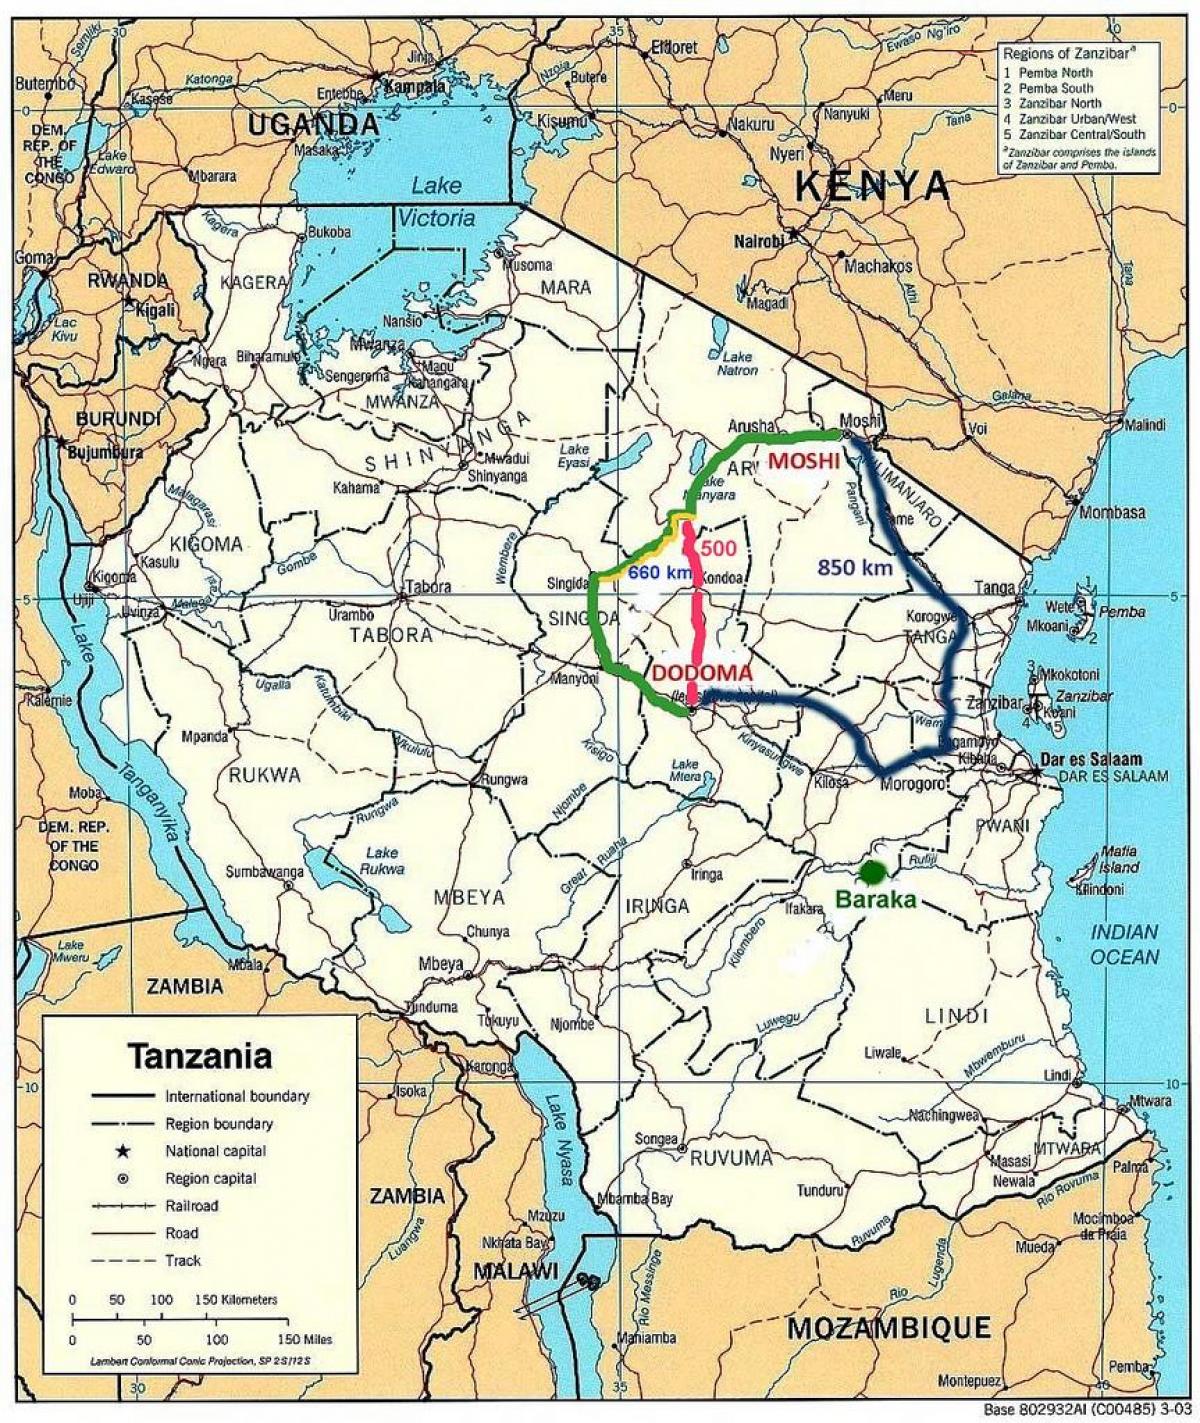 탄자니아의 도로 네트워크 지도